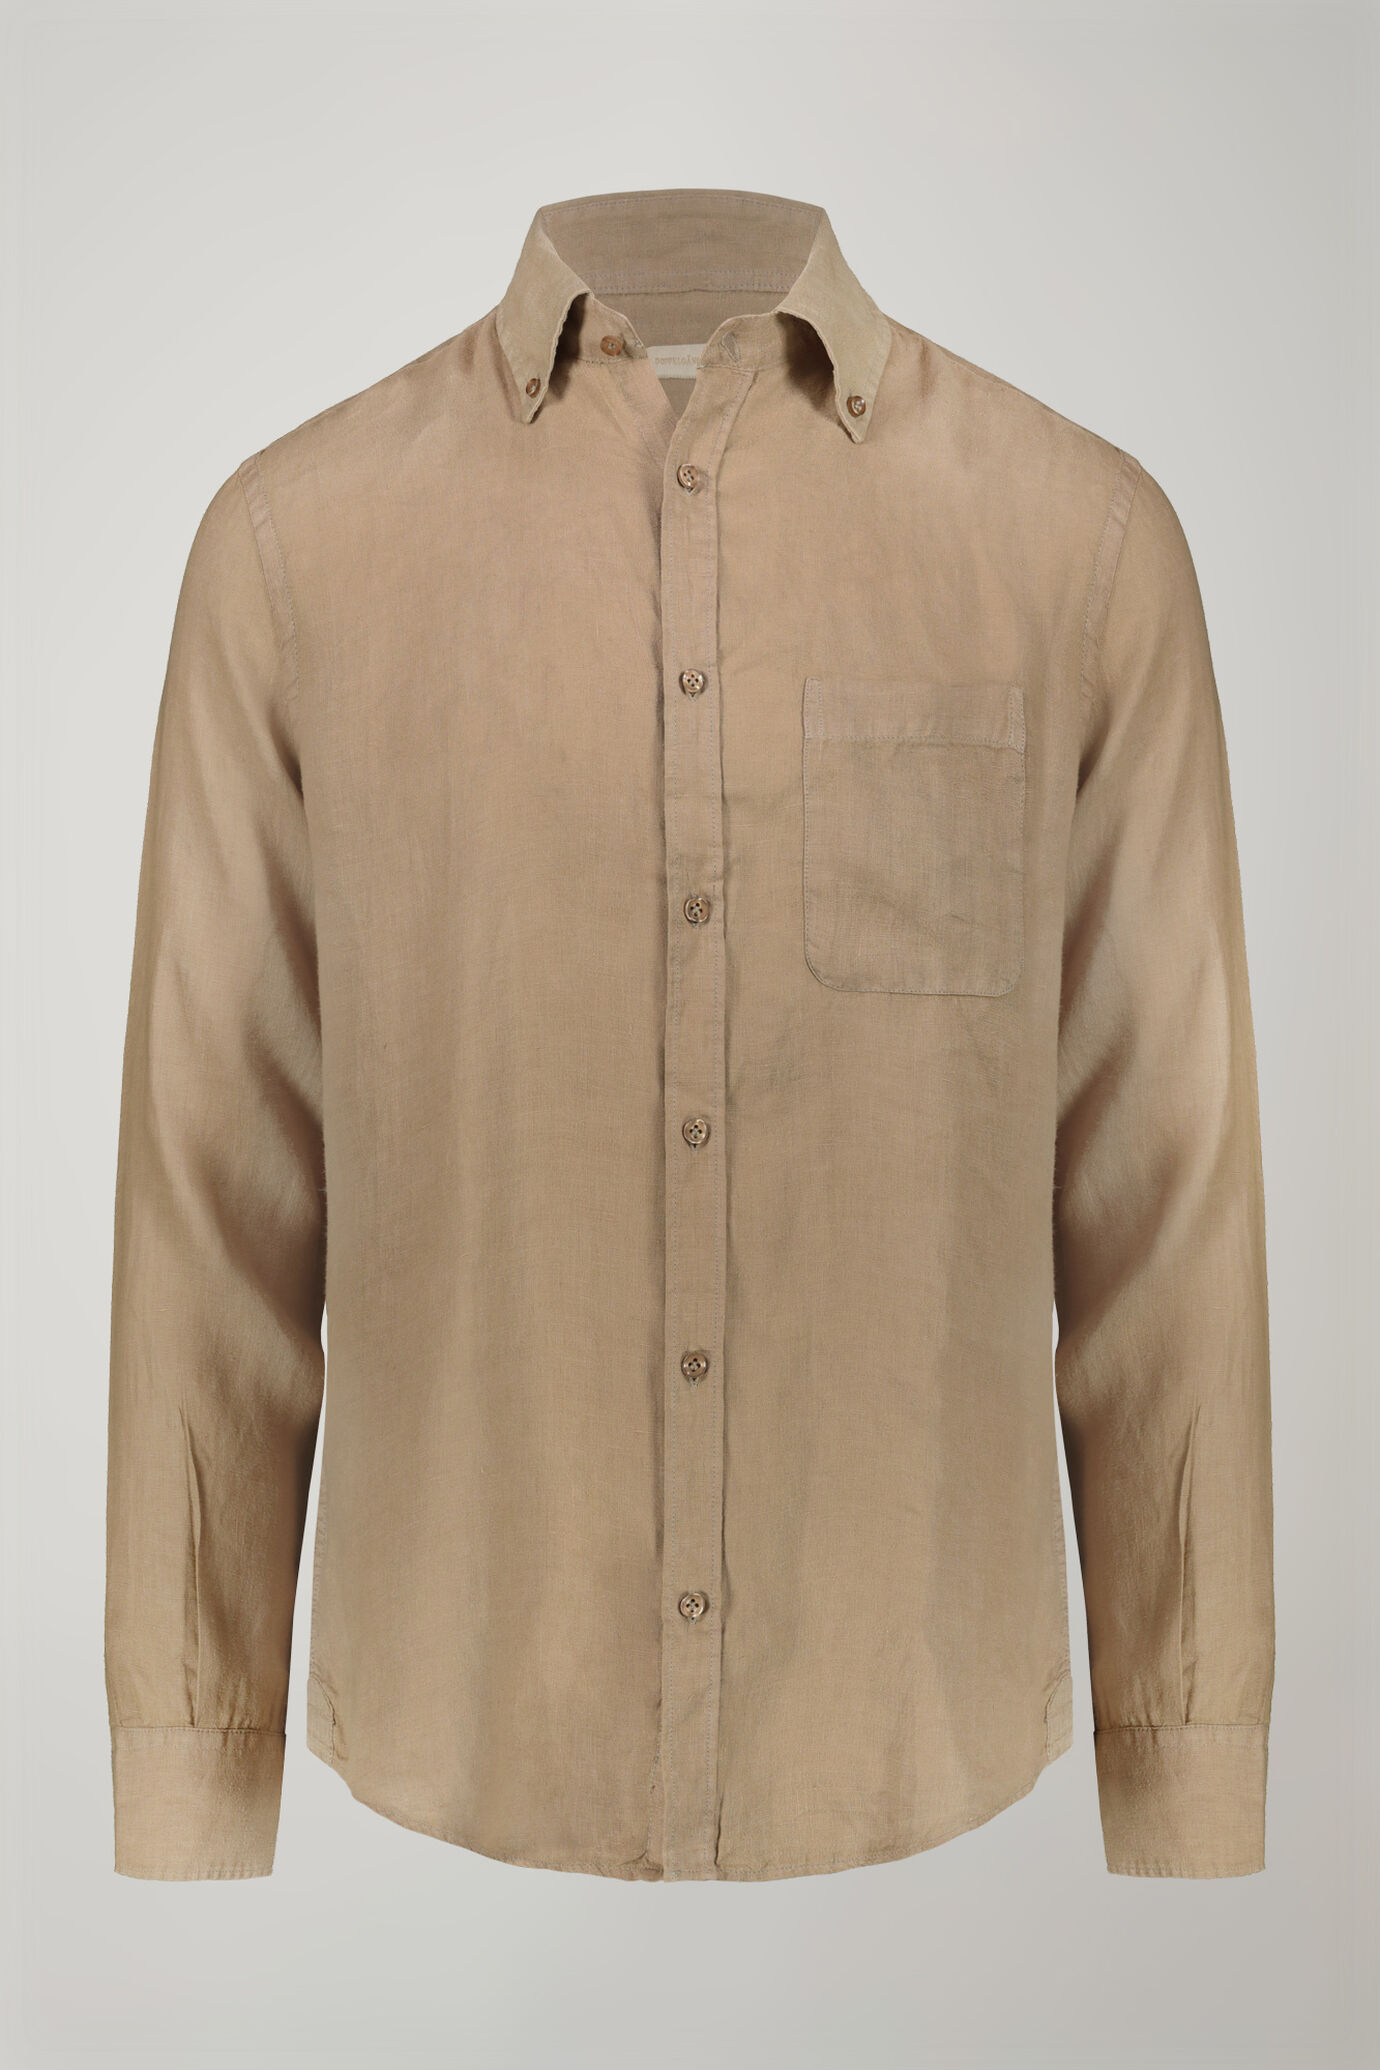 Camicia casual uomo collo button down 100% lino comfort fit image number 5